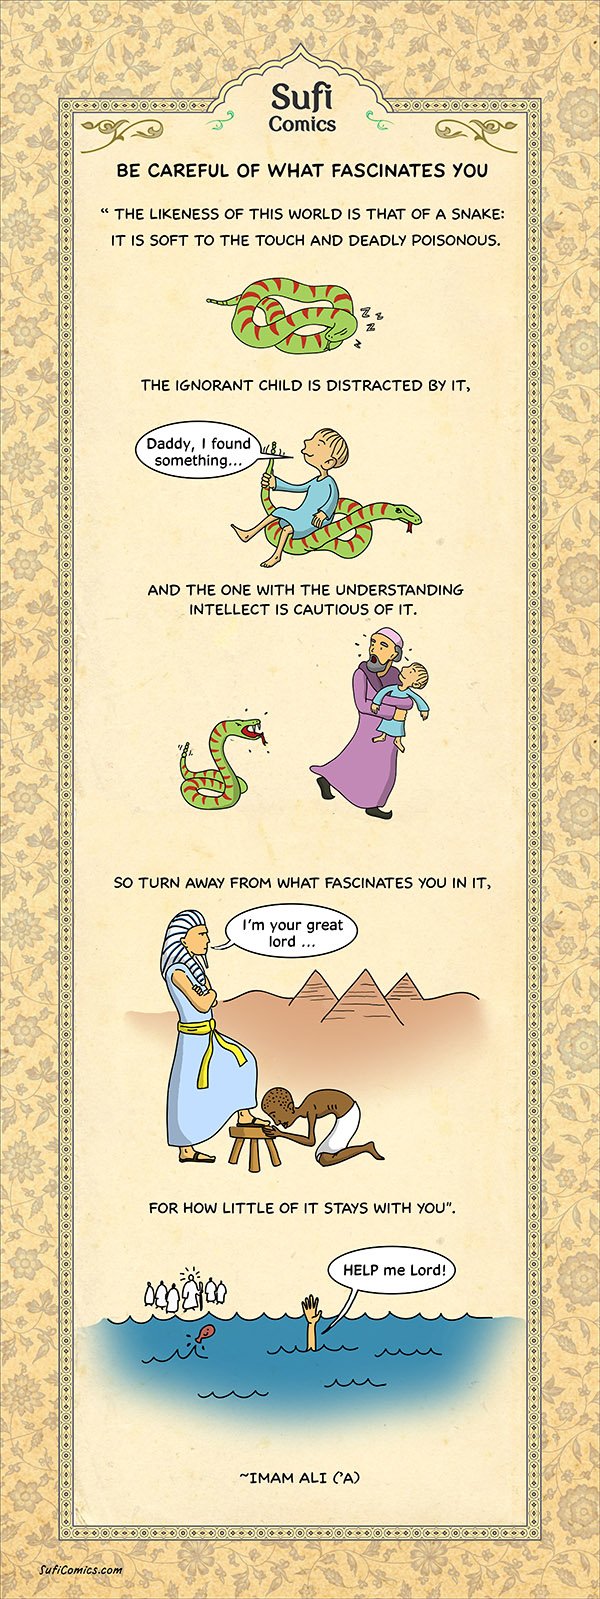 sufi-comics-be-careful-fascinates-you